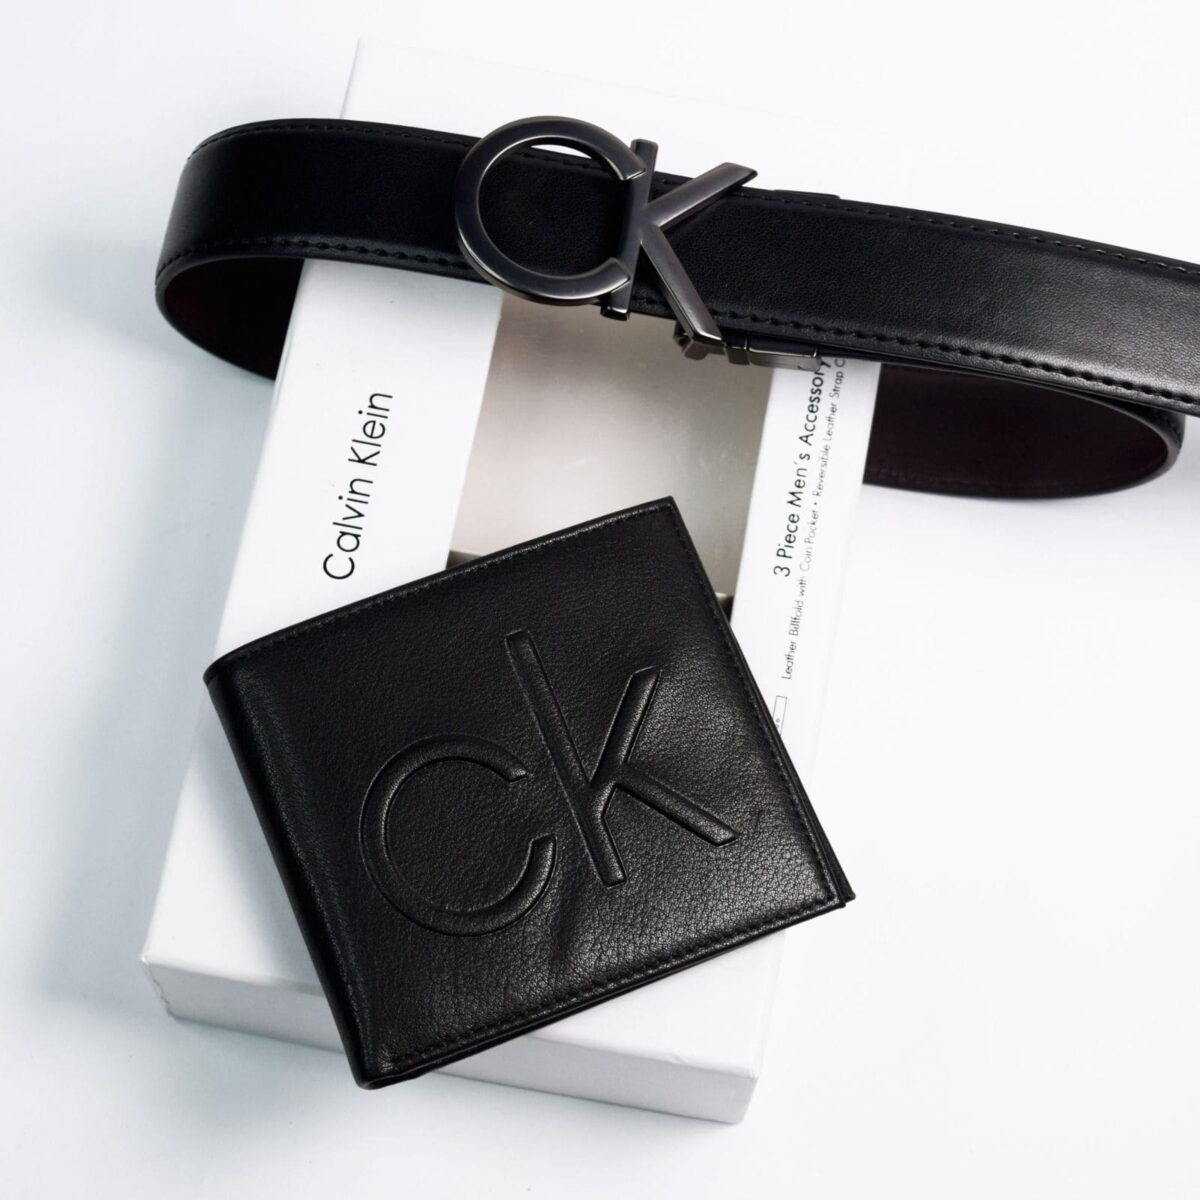 original-calvin-klein-wallet-belt-set-in-egypt-black-color